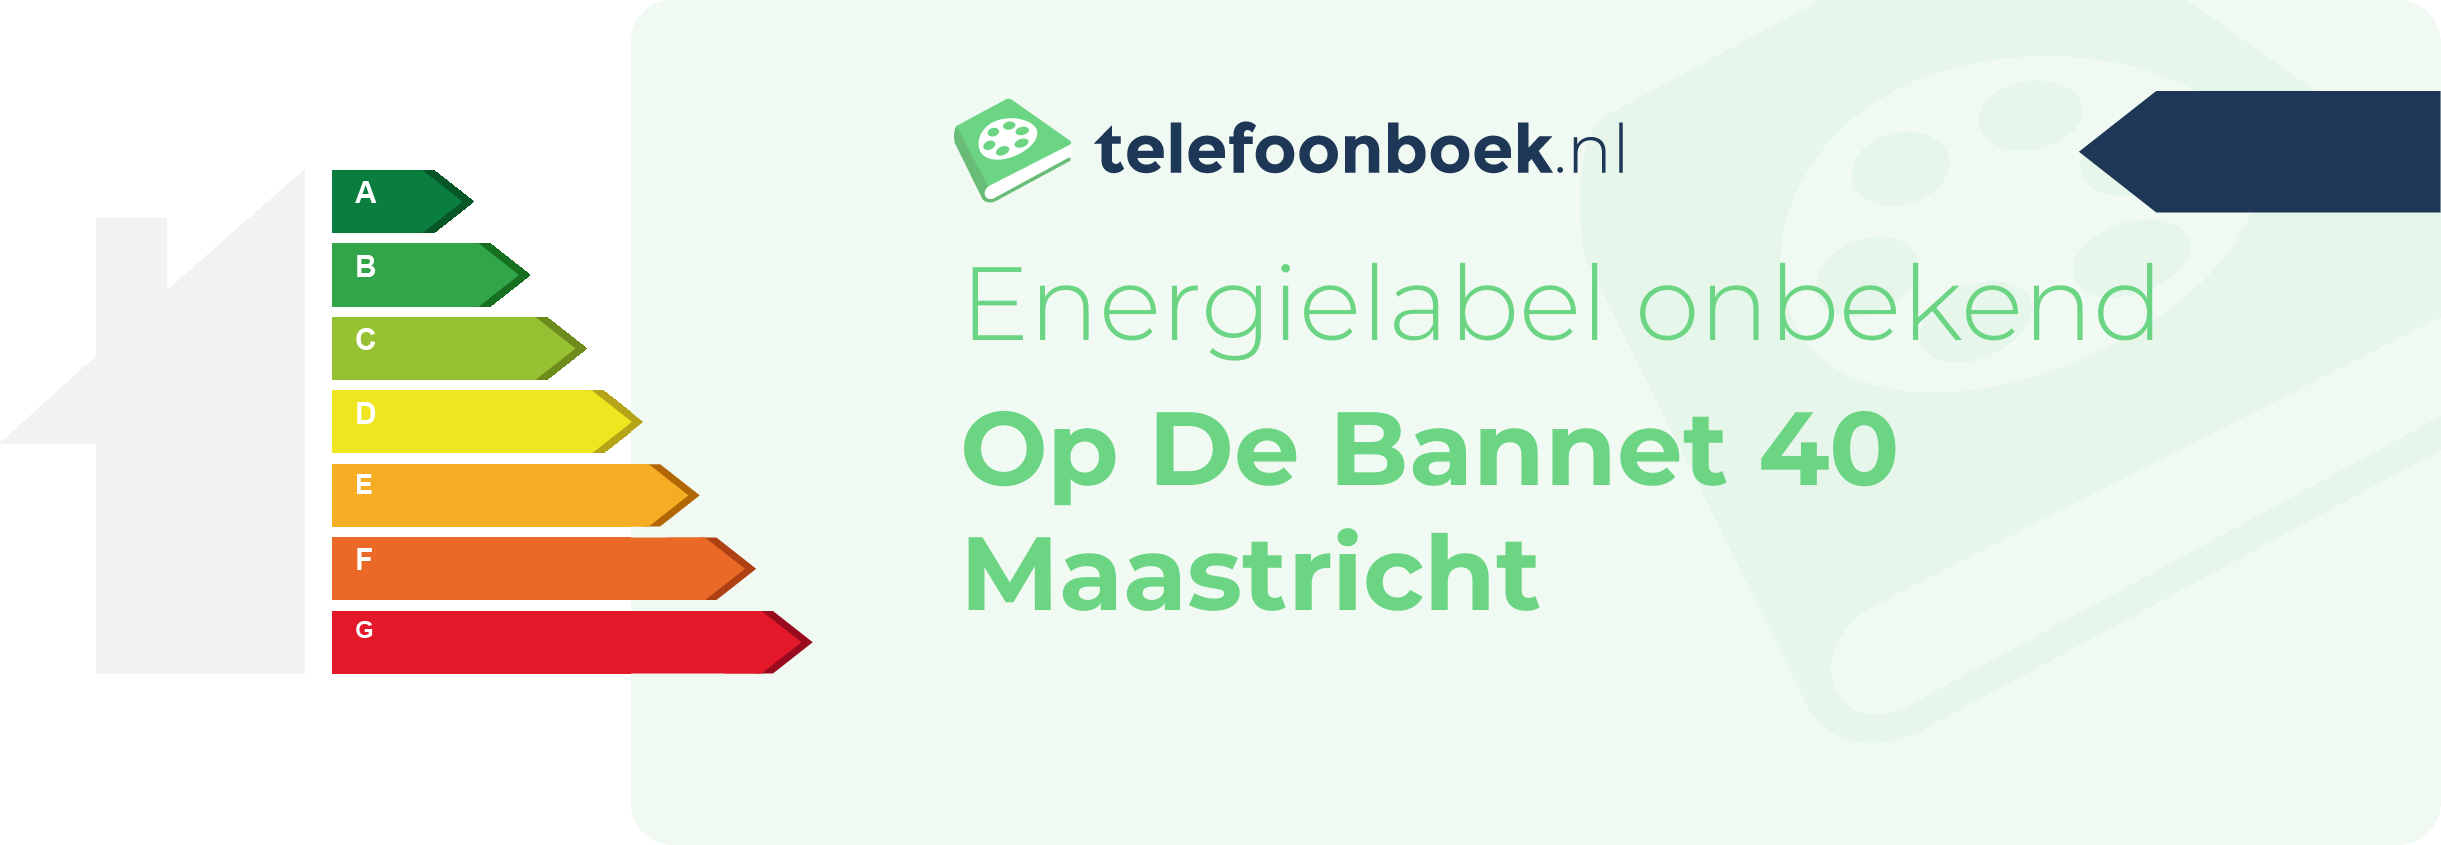 Energielabel Op De Bannet 40 Maastricht